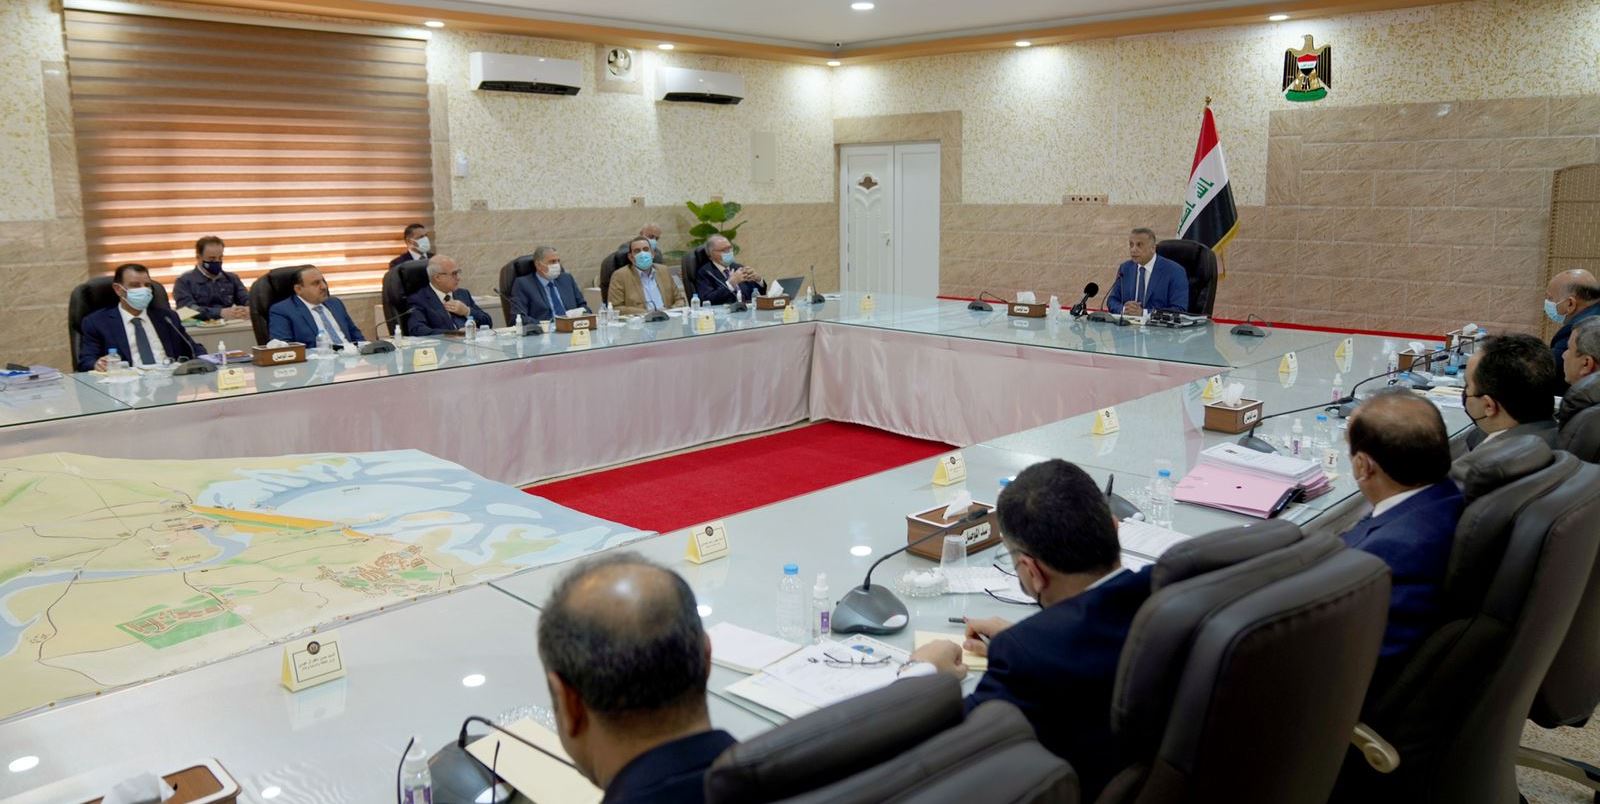 متحدث رسمي يوضح حقيقة "انزعاج الكاظمي" خلال اجتماع حكومي 